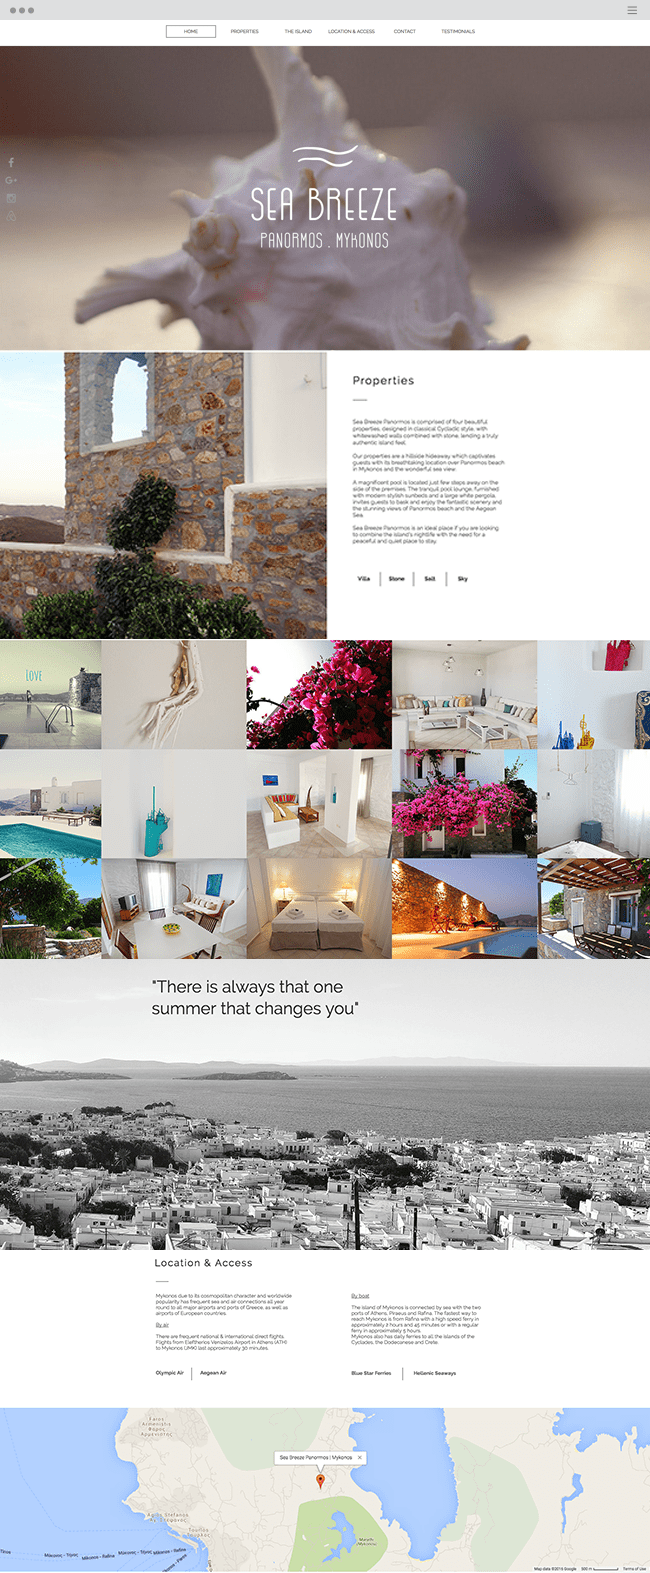 website của Sea Breeze Panormos Mykonos Villas 